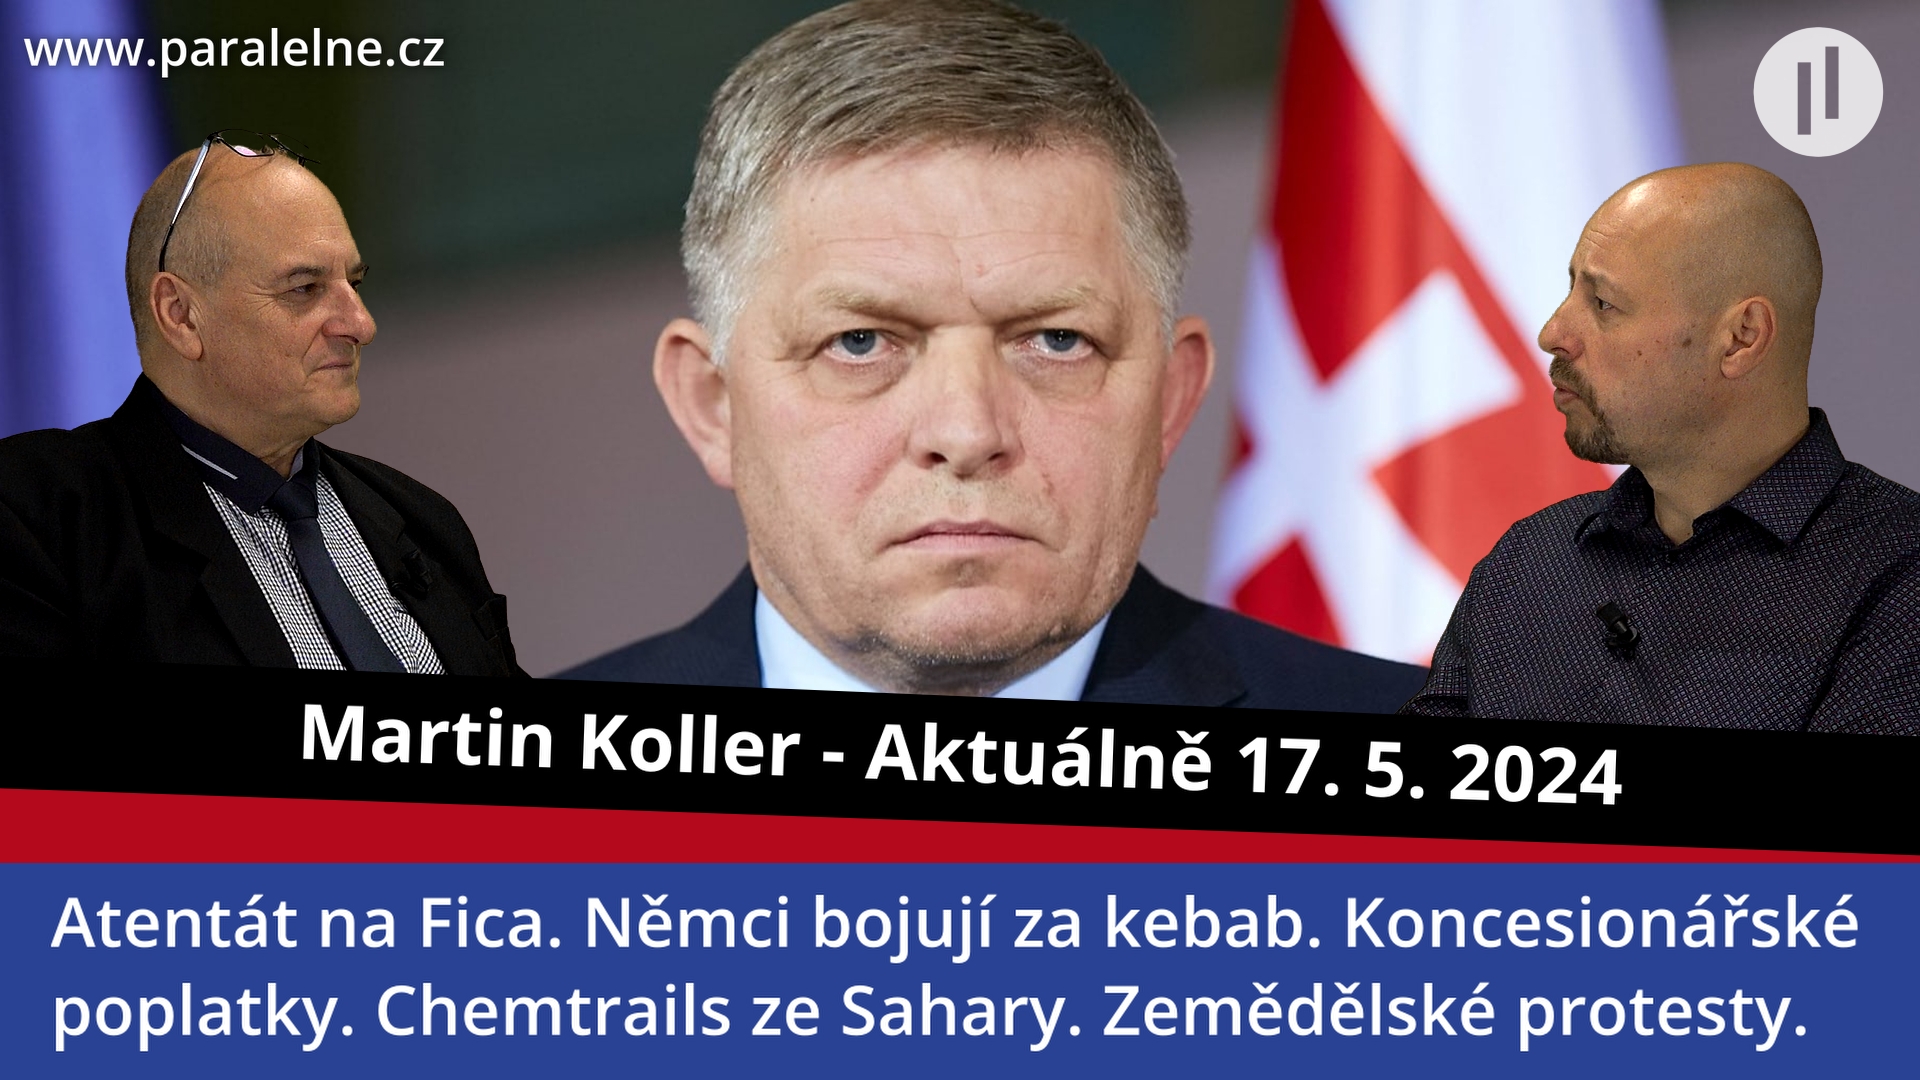 Martin Koller aktuálně – Atentát na premiéra Roberta Fica. Bude Německo chalífátem? Ekonomická apokalypsa na obzoru.